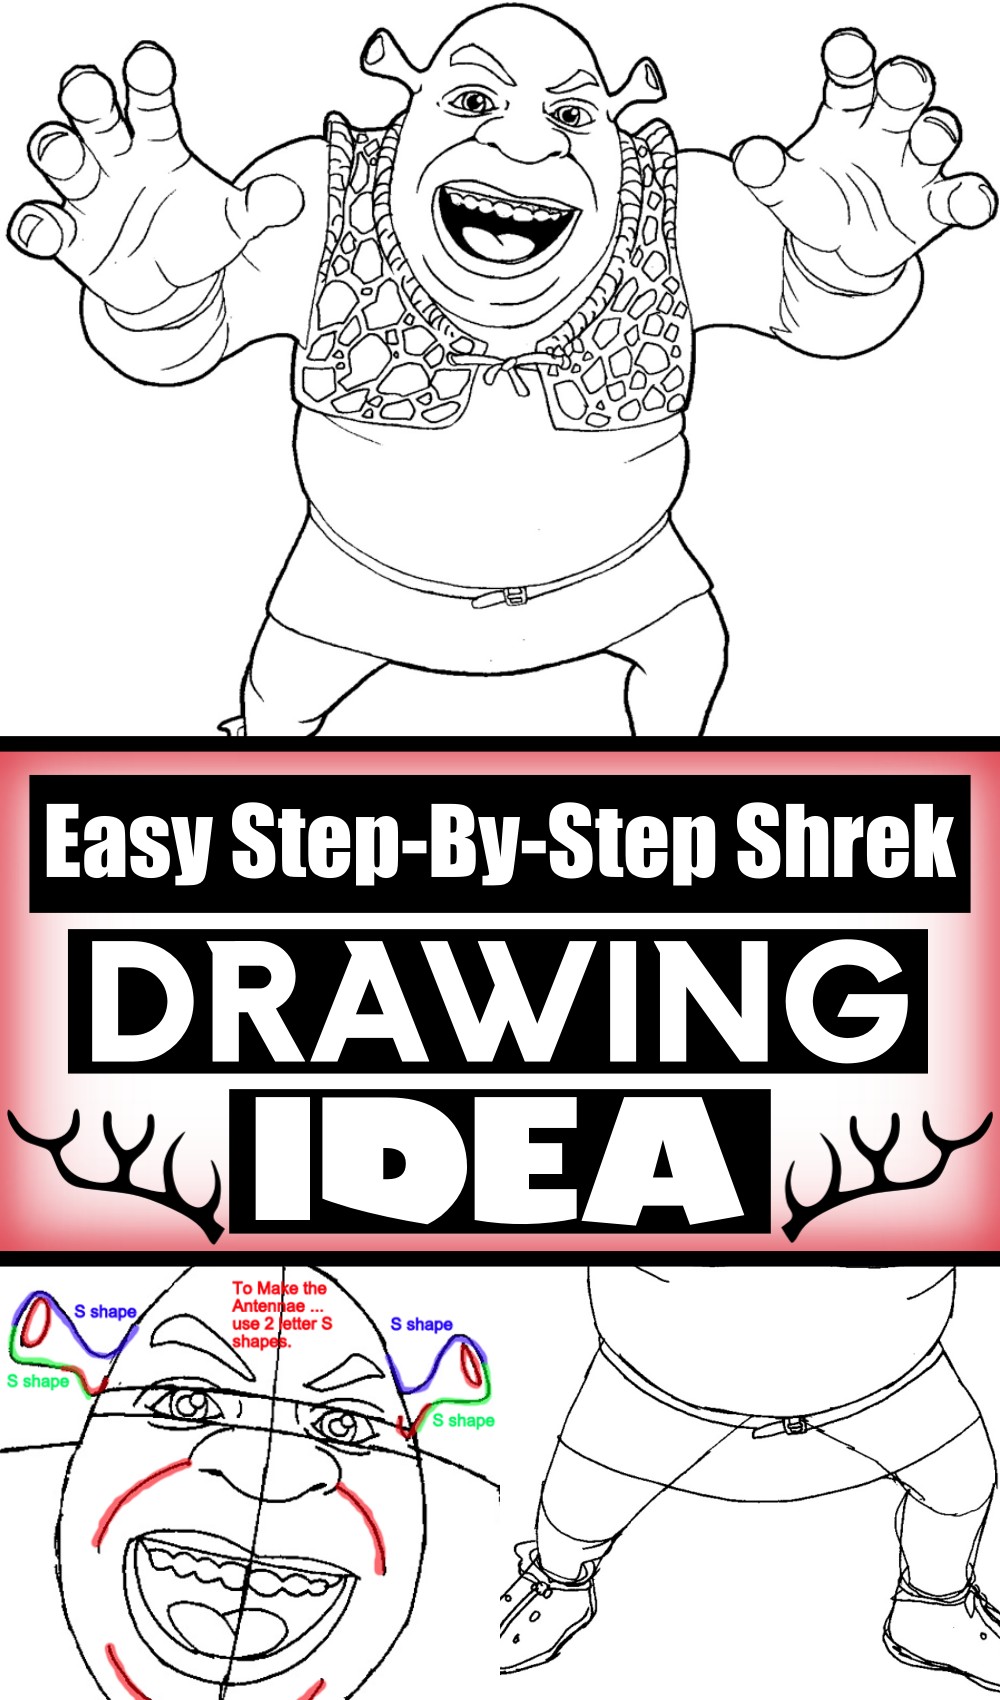 Easy Step-By-Step Shrek Drawing Tutorial